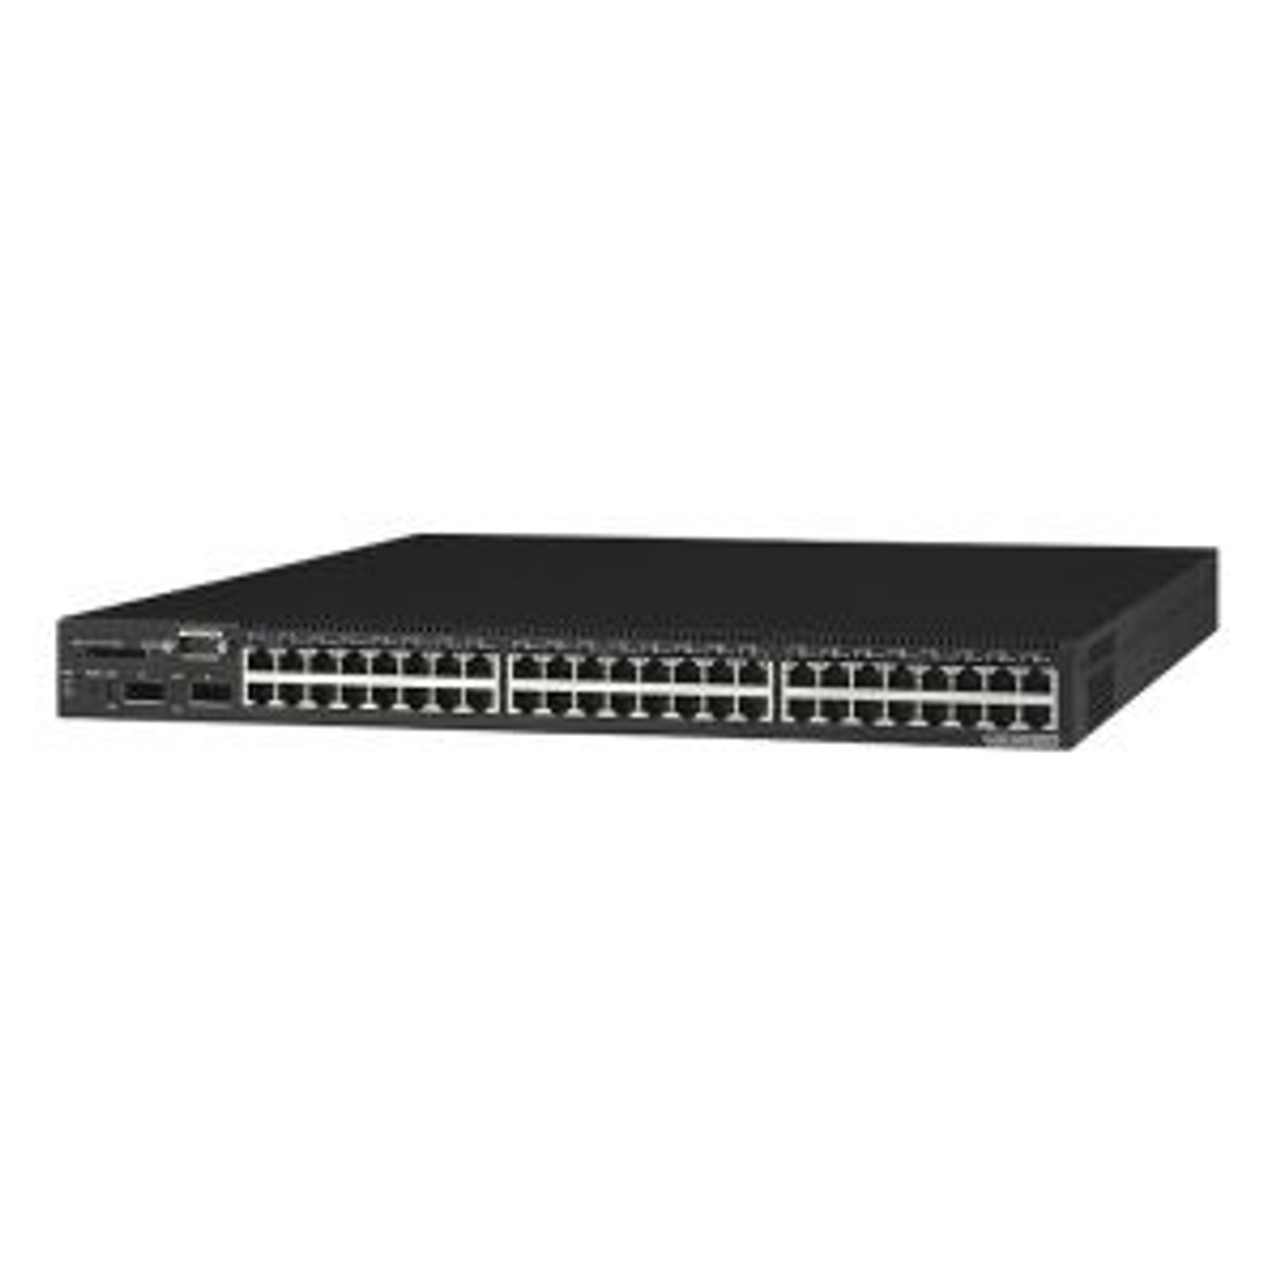 101-00258 | NetApp | NAE-1102 16-Port Gigabit Ethernet Switch